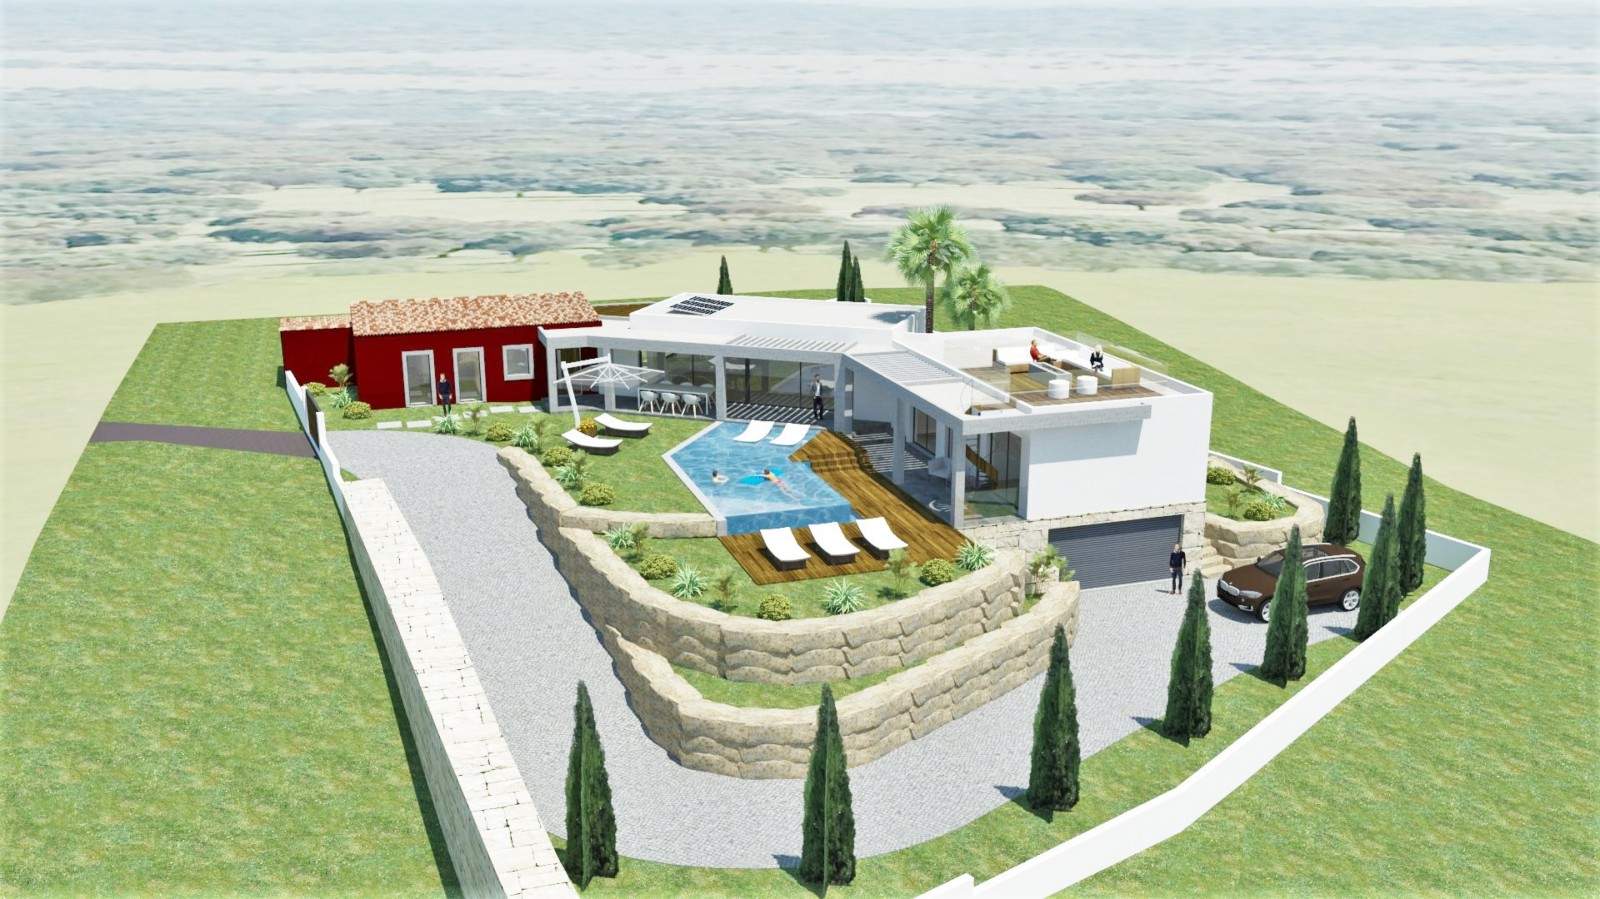 Terrain à bâtir avec projet de construction, à vendre à Loulé, Algarve_201533